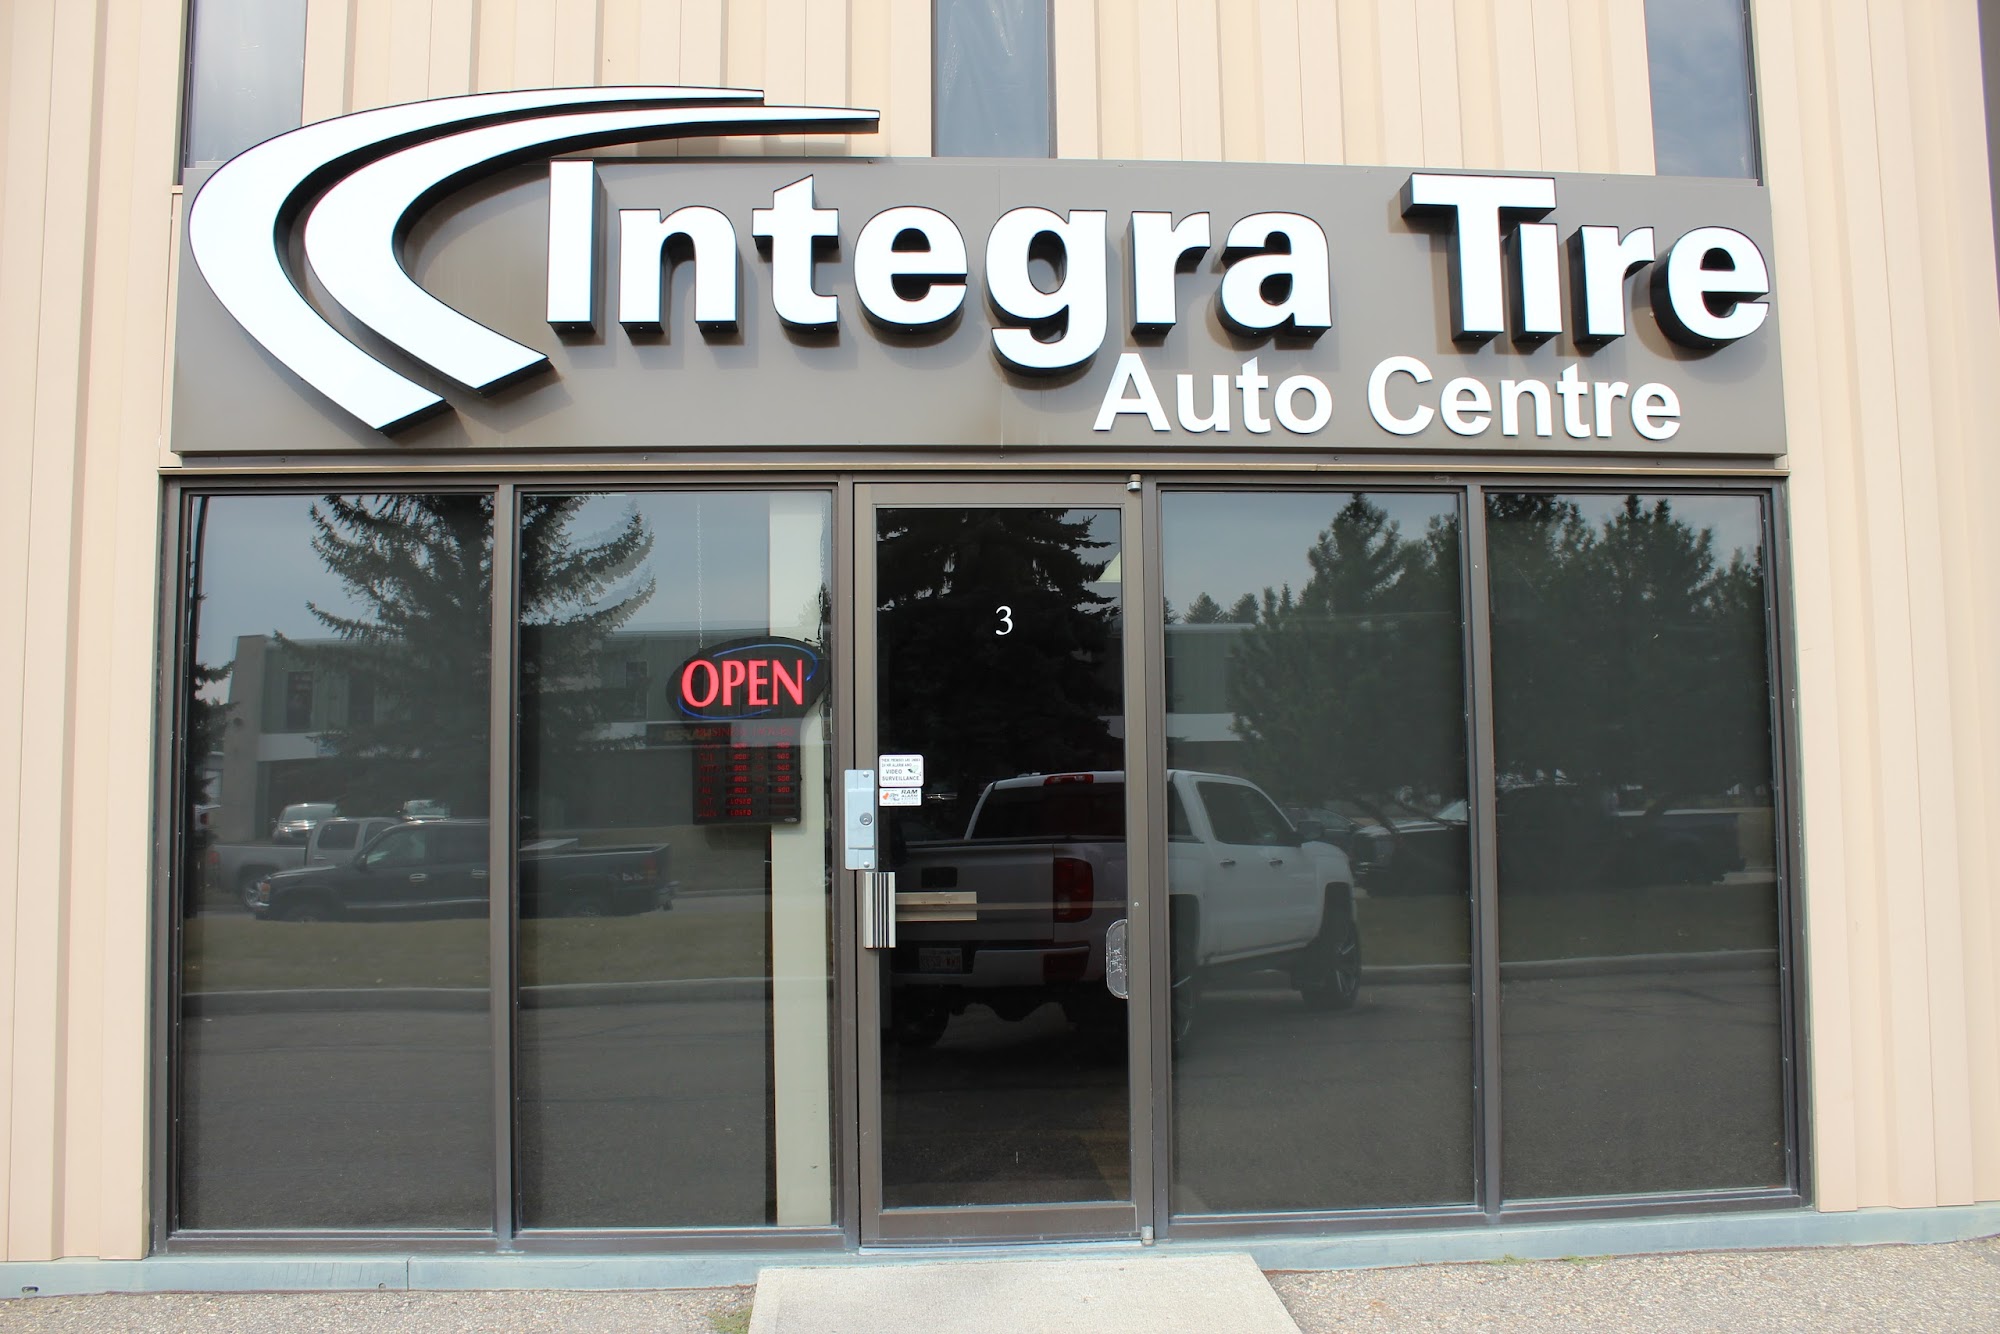 Integra Tire Auto Centre